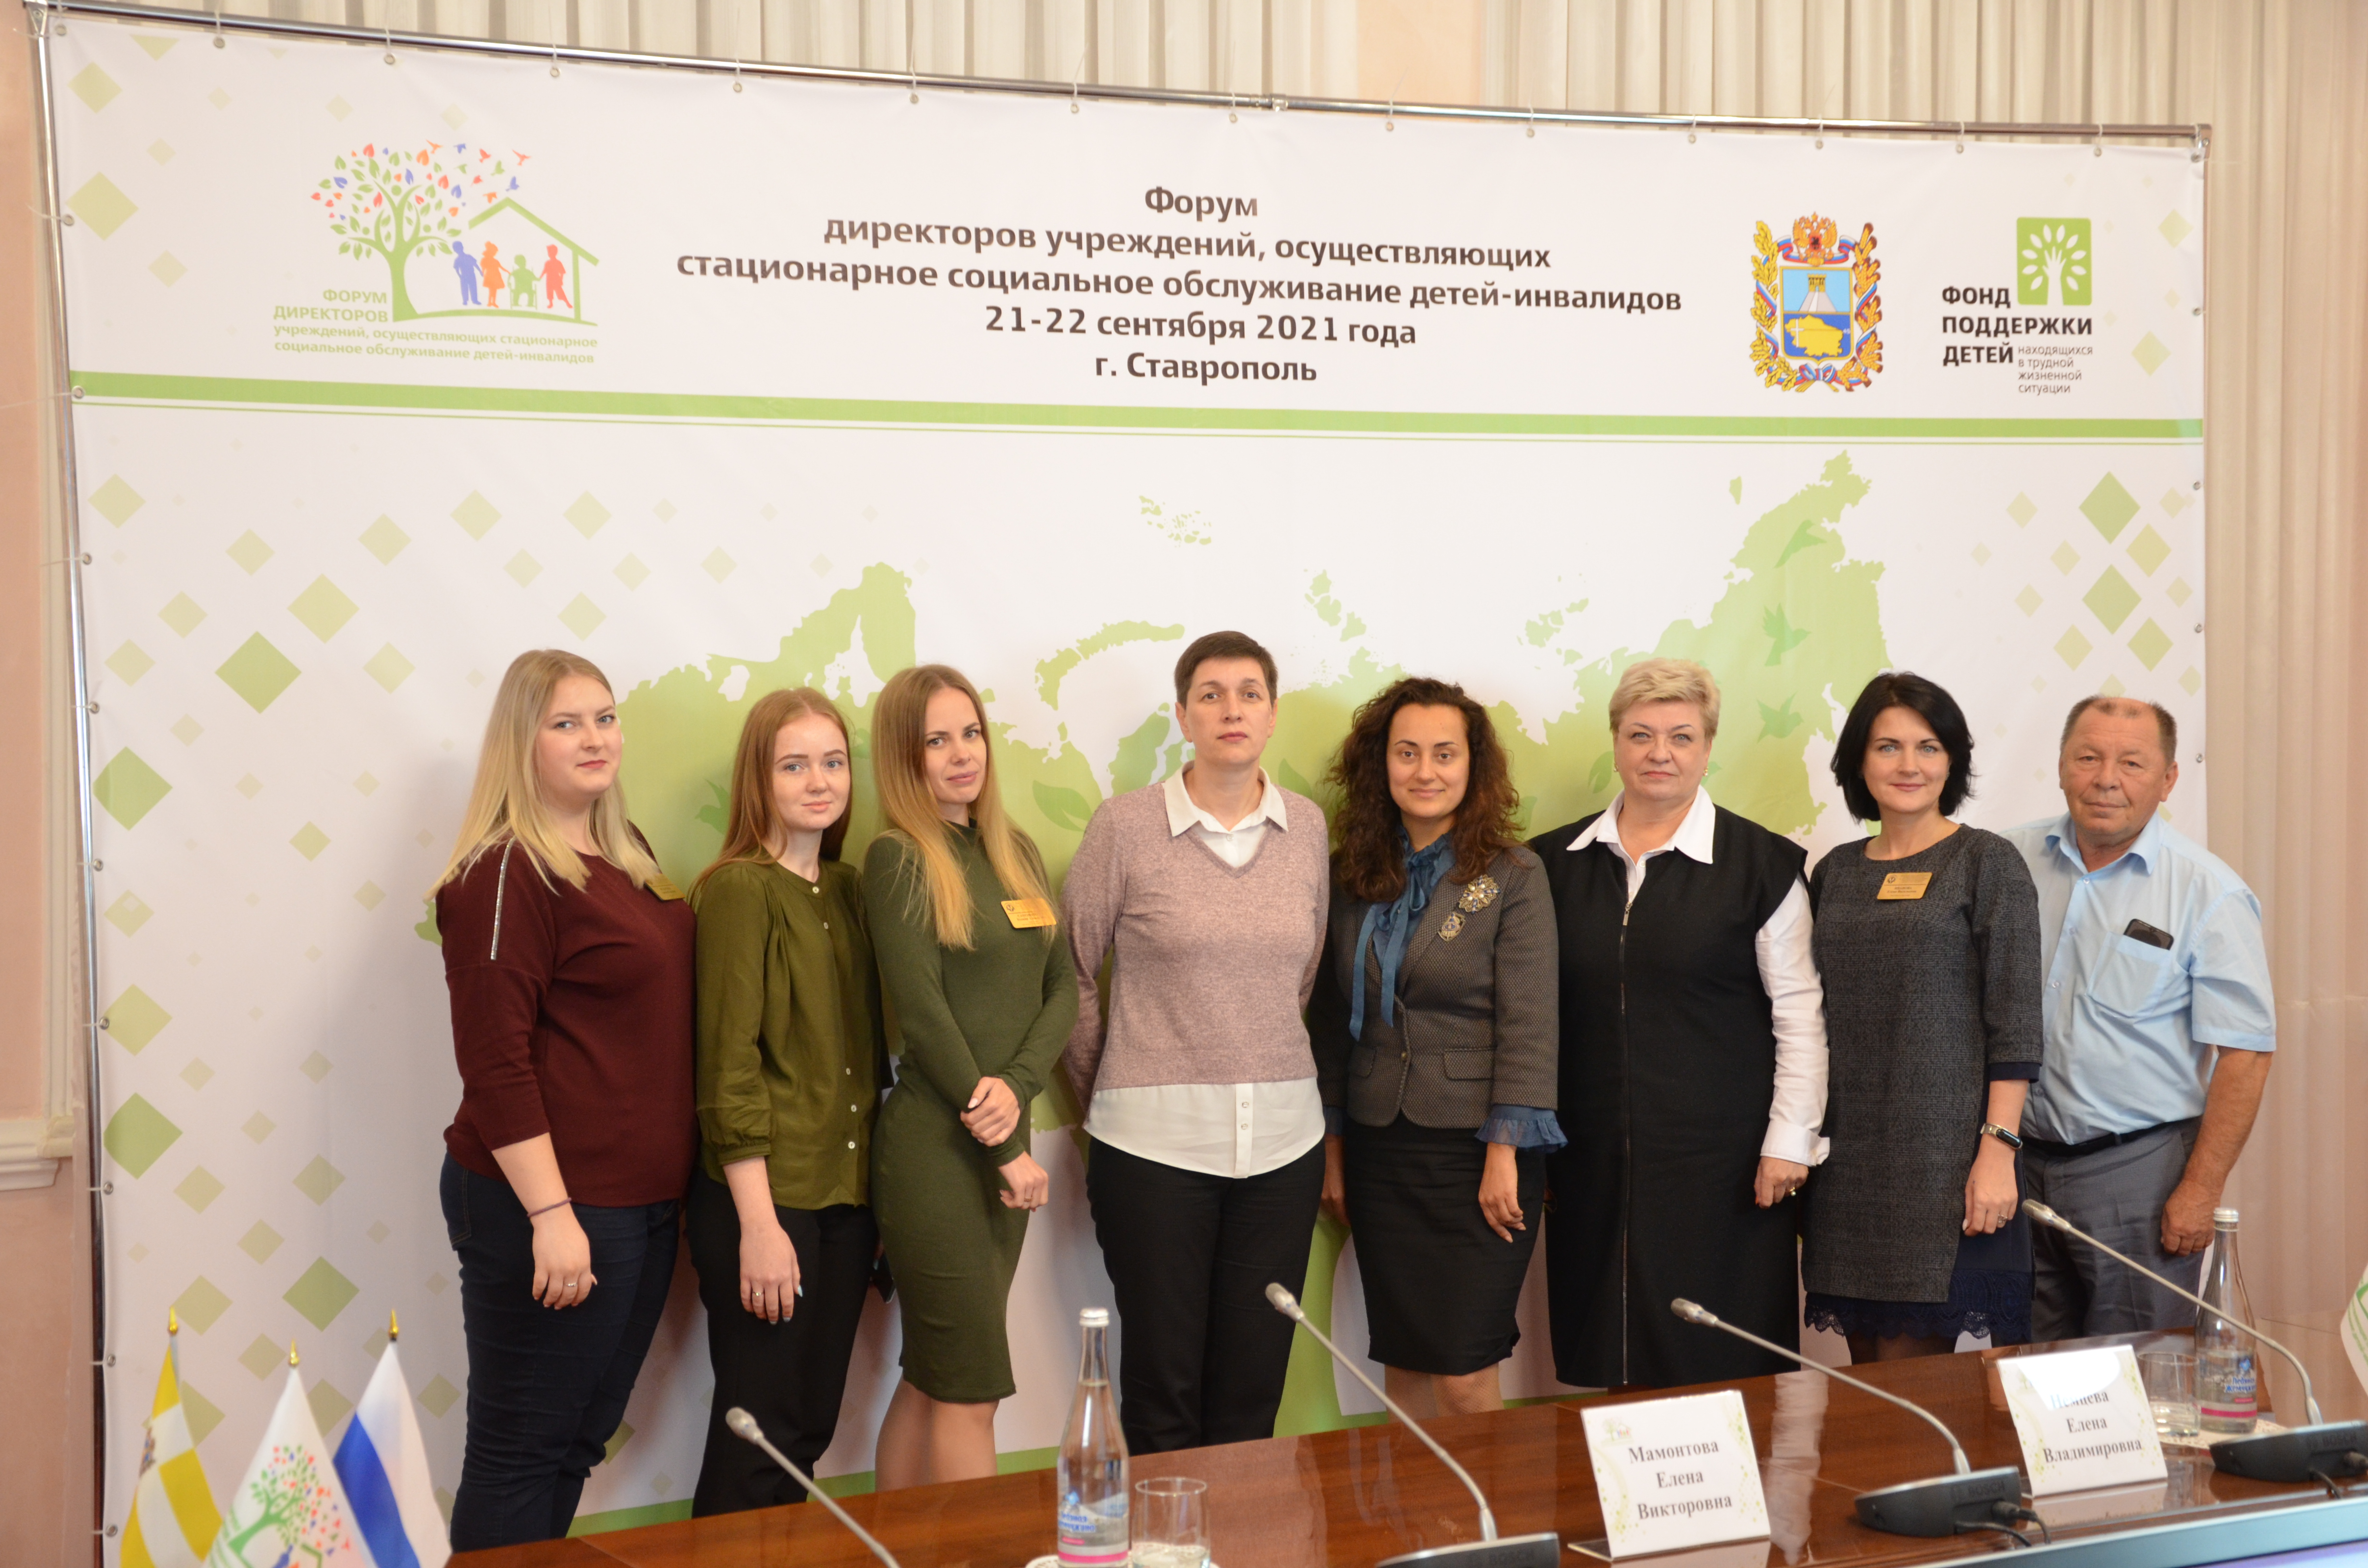 В Ставрополе завершился Форум директоров учреждений стационарного социального обслуживания детей-инвалидов